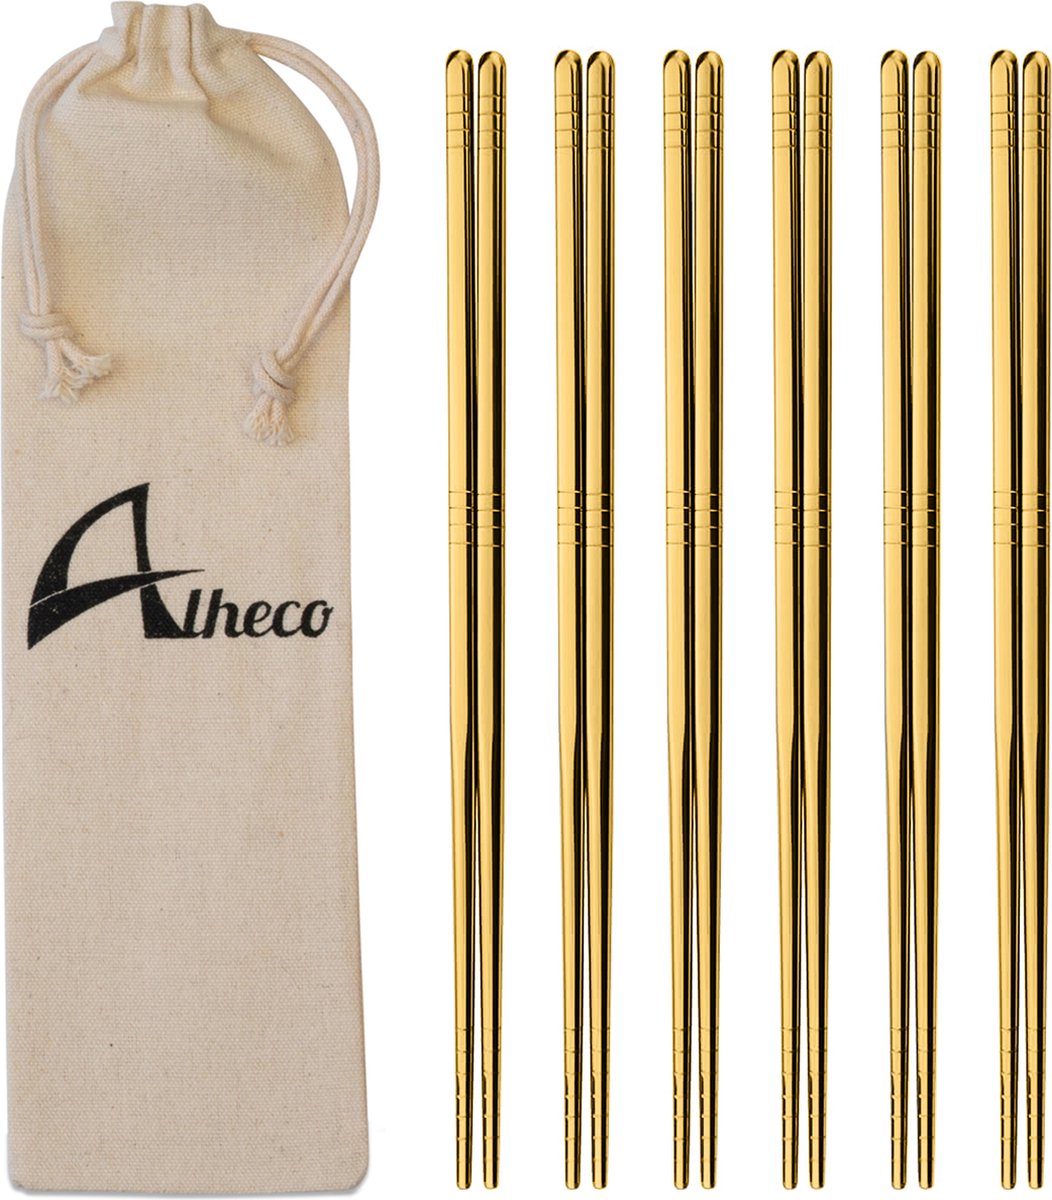 Alheco 6 paar Koreaanse chopsticks - Eetstokjes - Metaal / RVS - Goud - Alheco